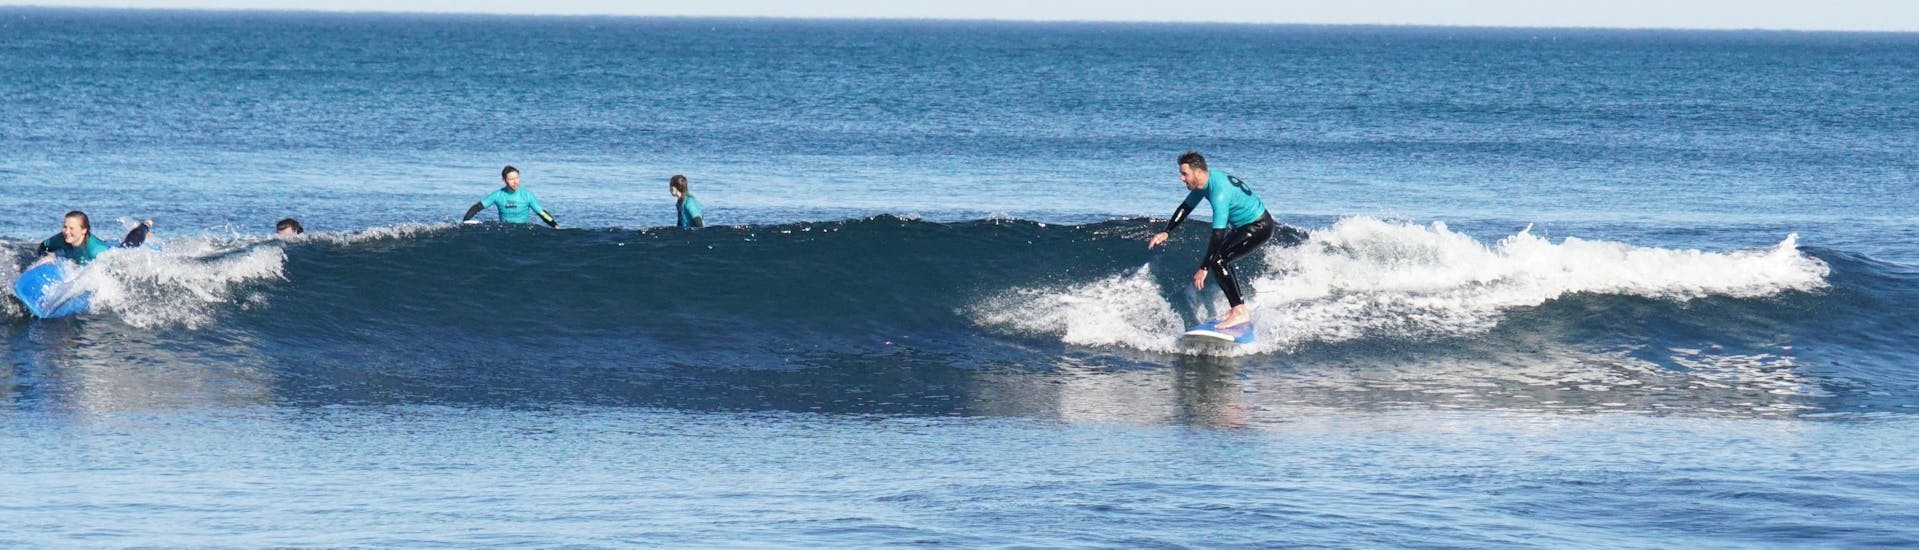 Surfkurs in Ericeira für leicht Fortgeschrittene.